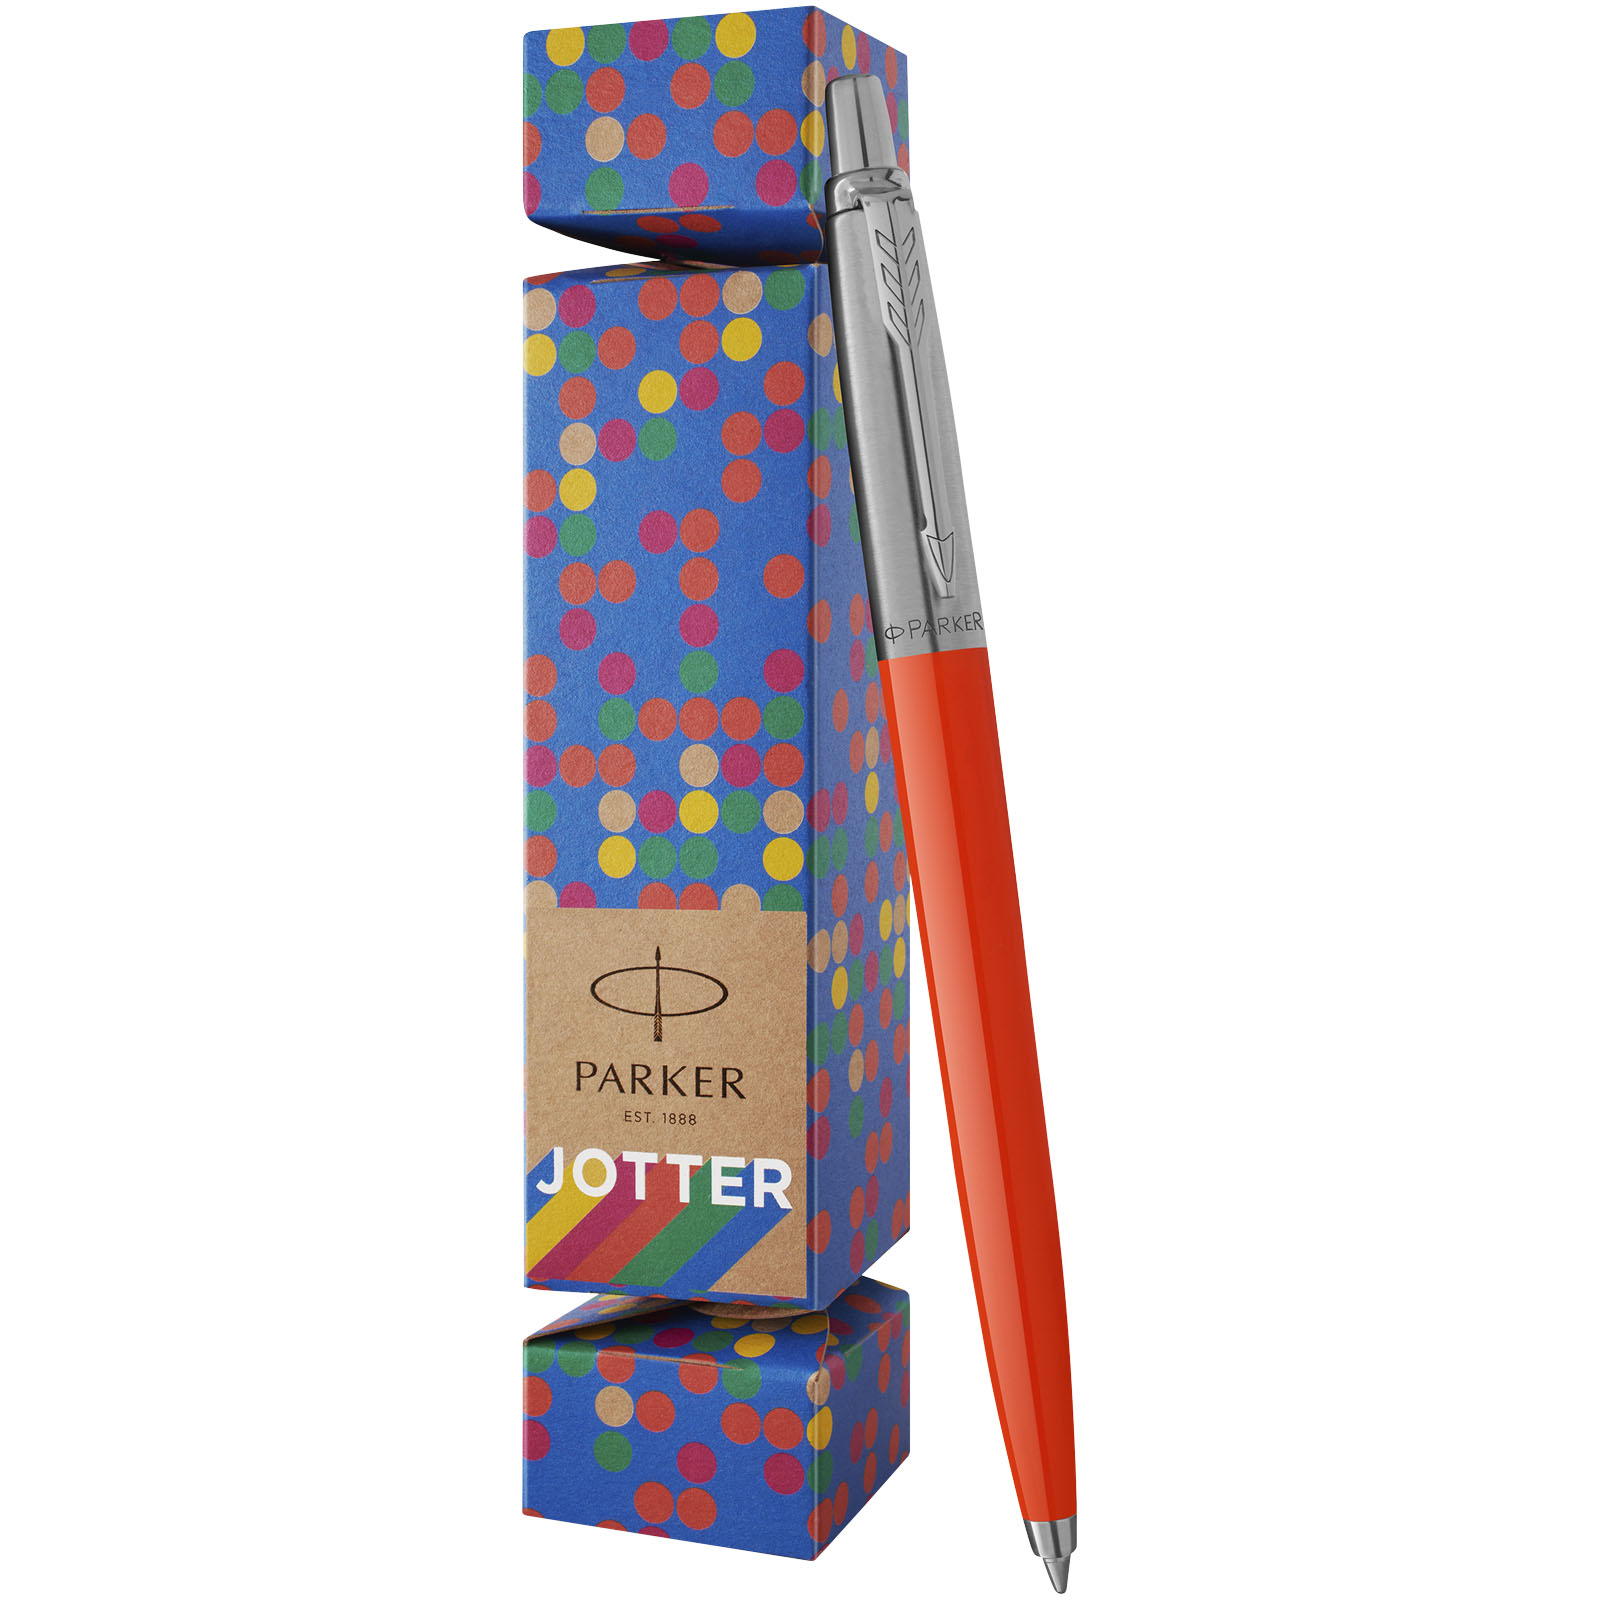 Gift sets - Parker Jotter Cracker Pen gift set